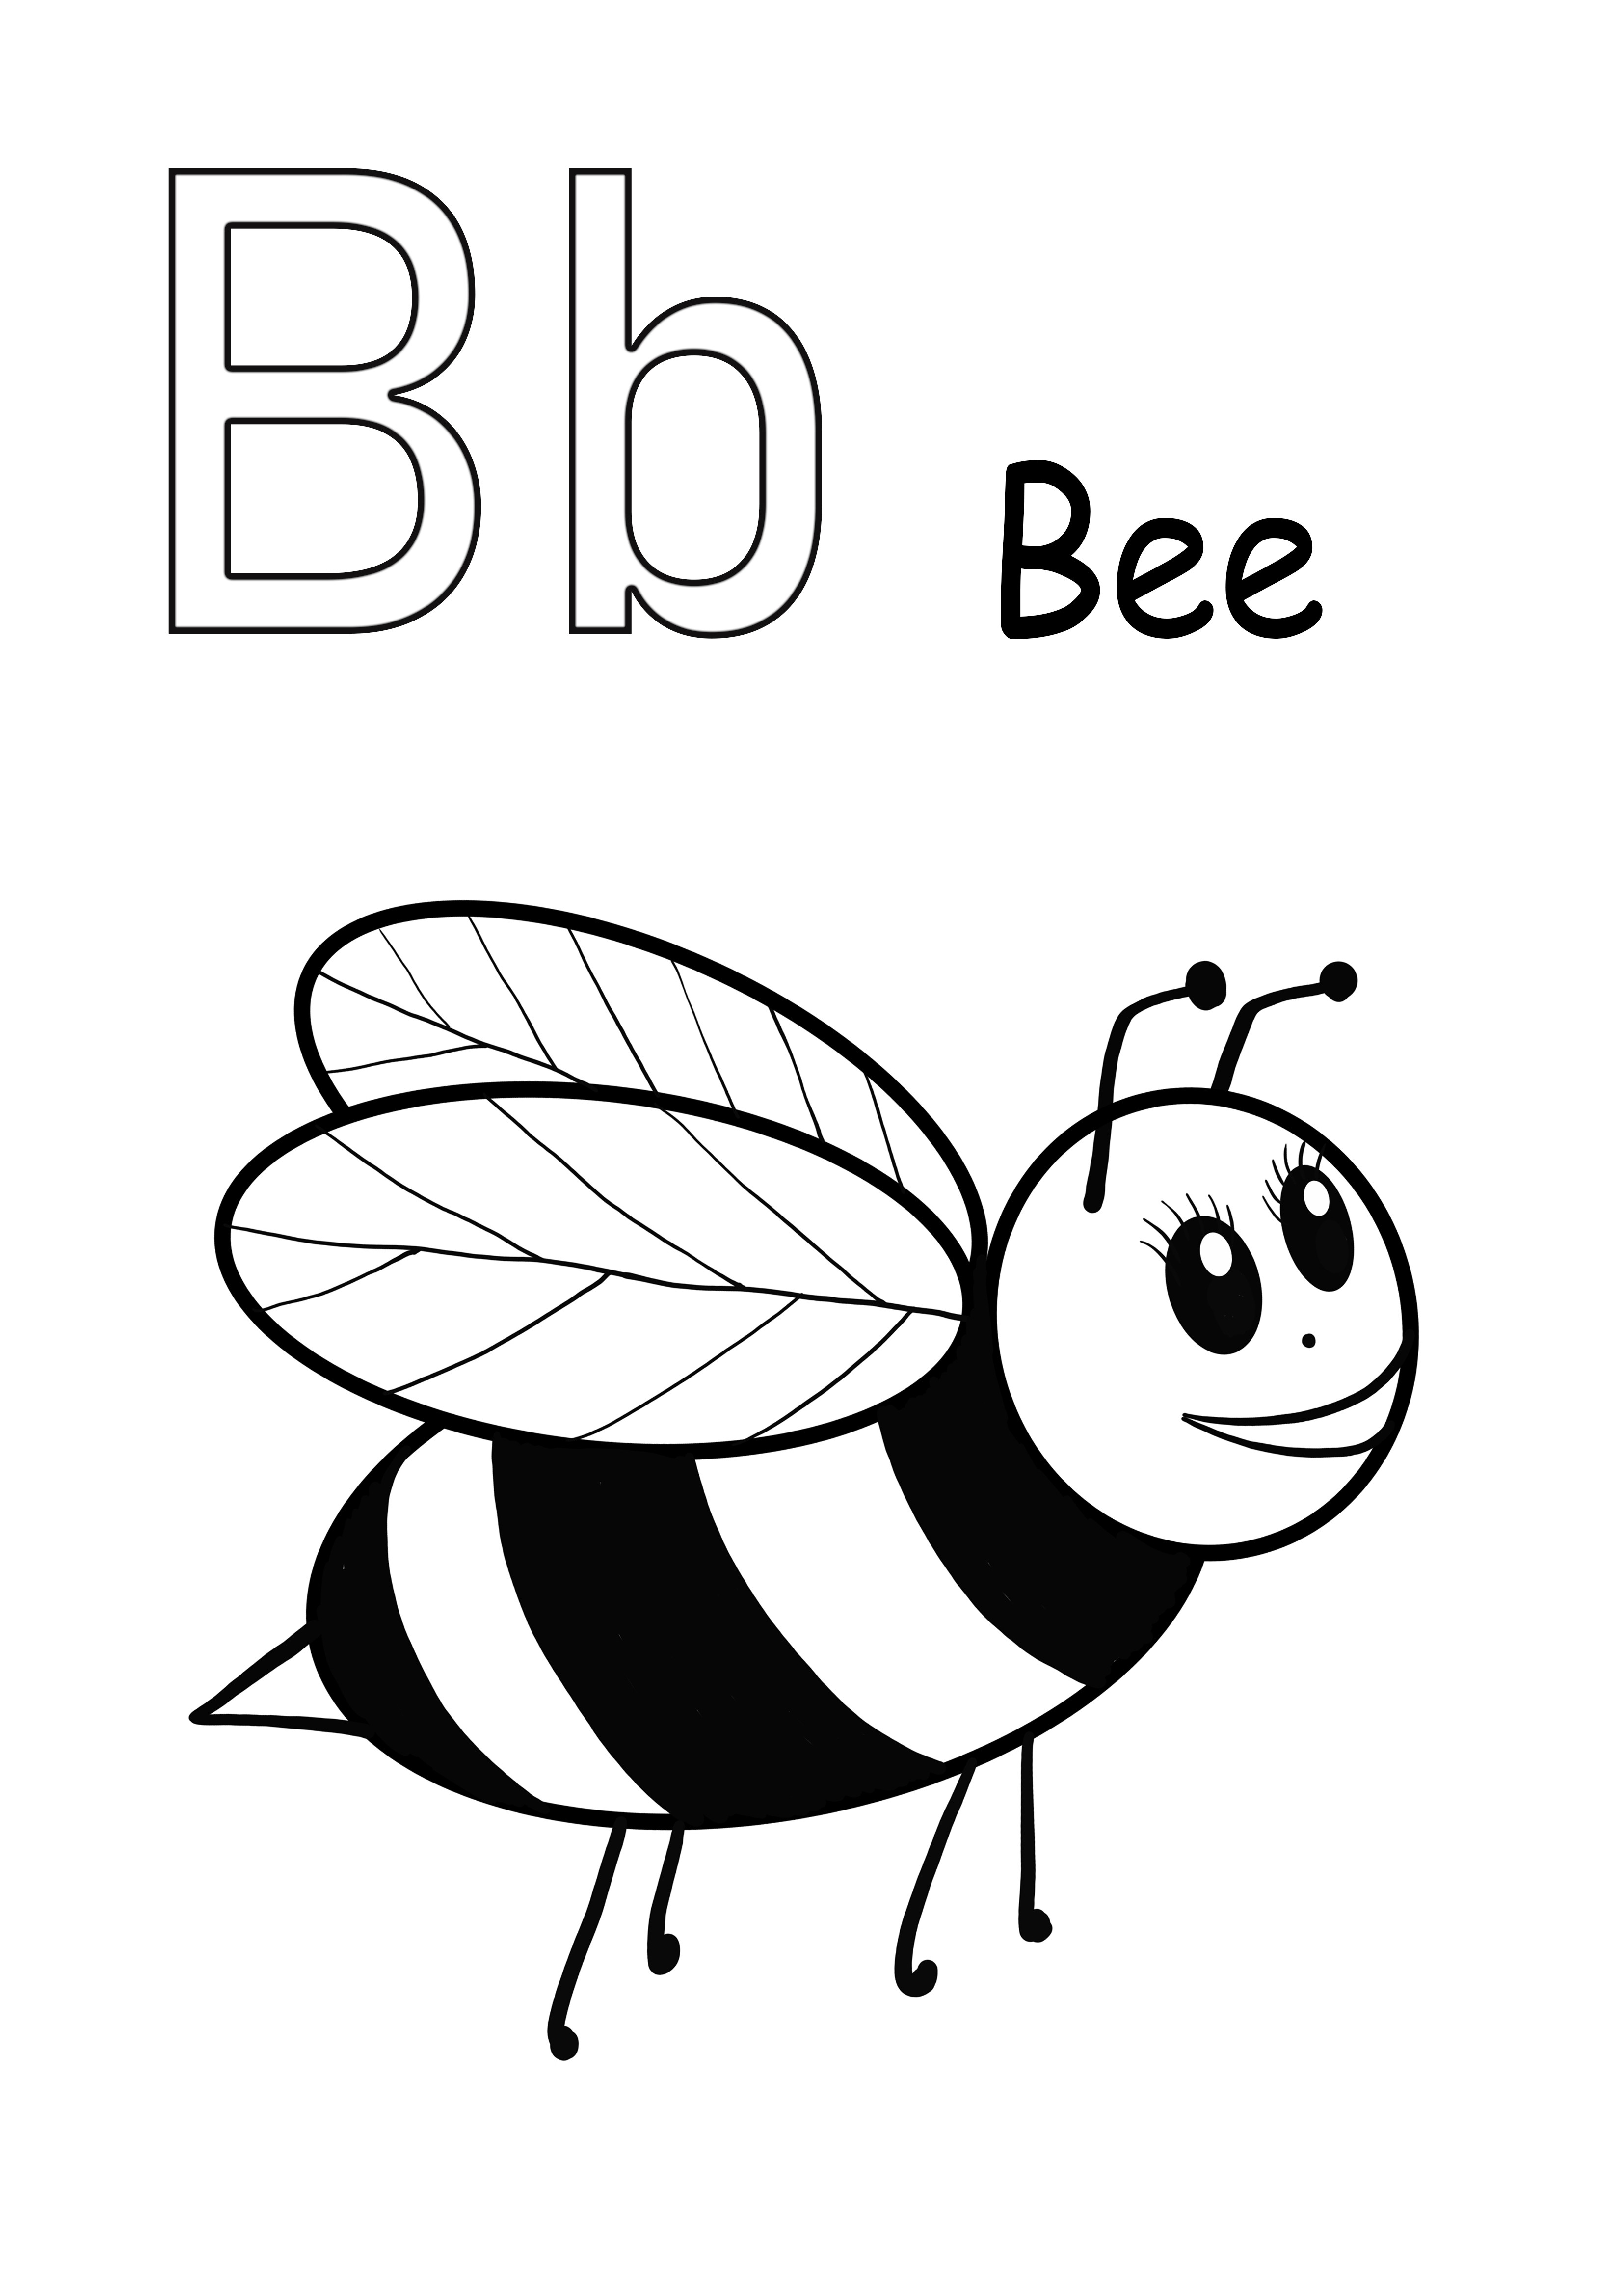 文字Bはミツバチのぬりえと無料ダウンロード画像用です